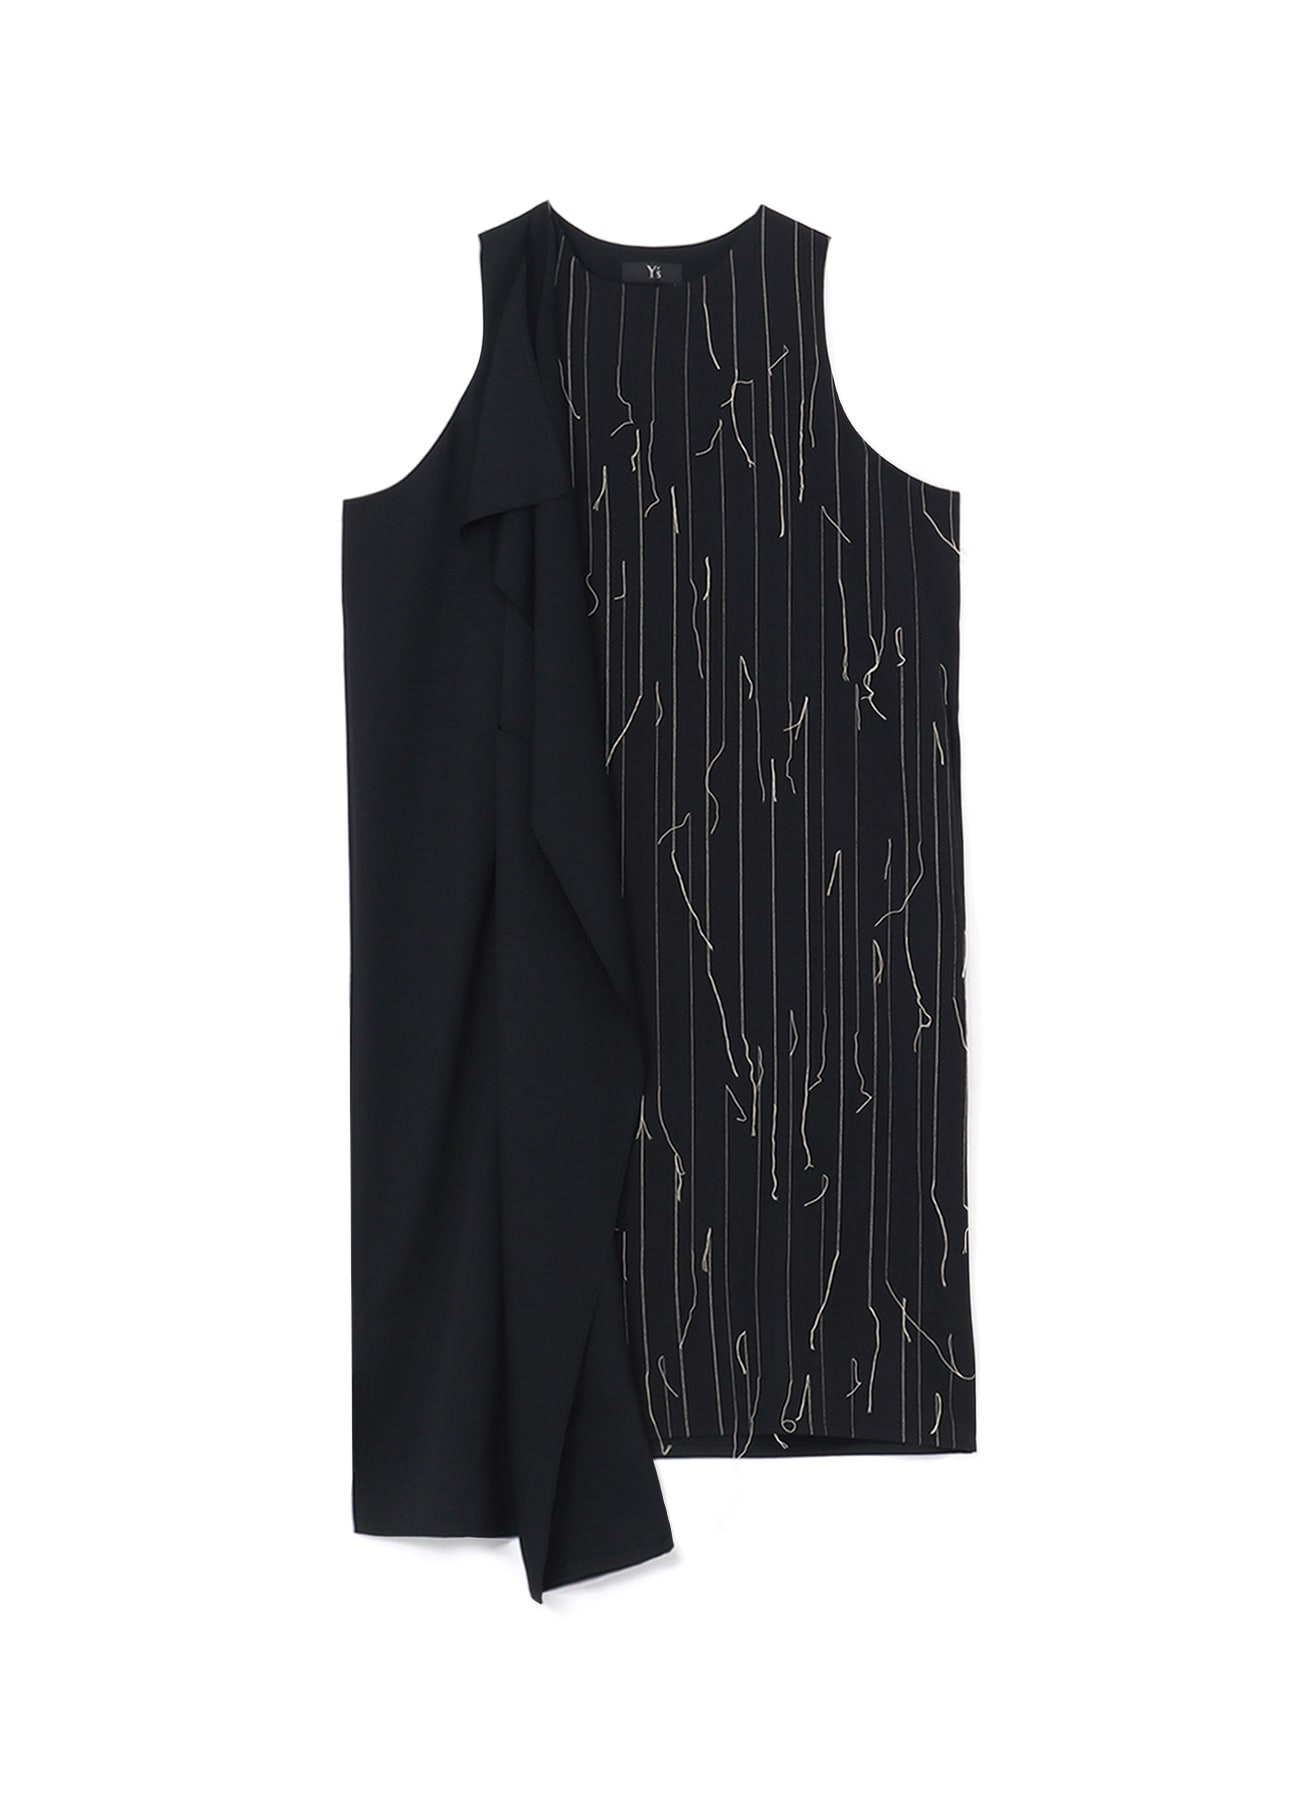 WOOL RIGHT FLAP DRESS(XS Black): Vintage 1.1｜THE SHOP YOHJI YAMAMOTO